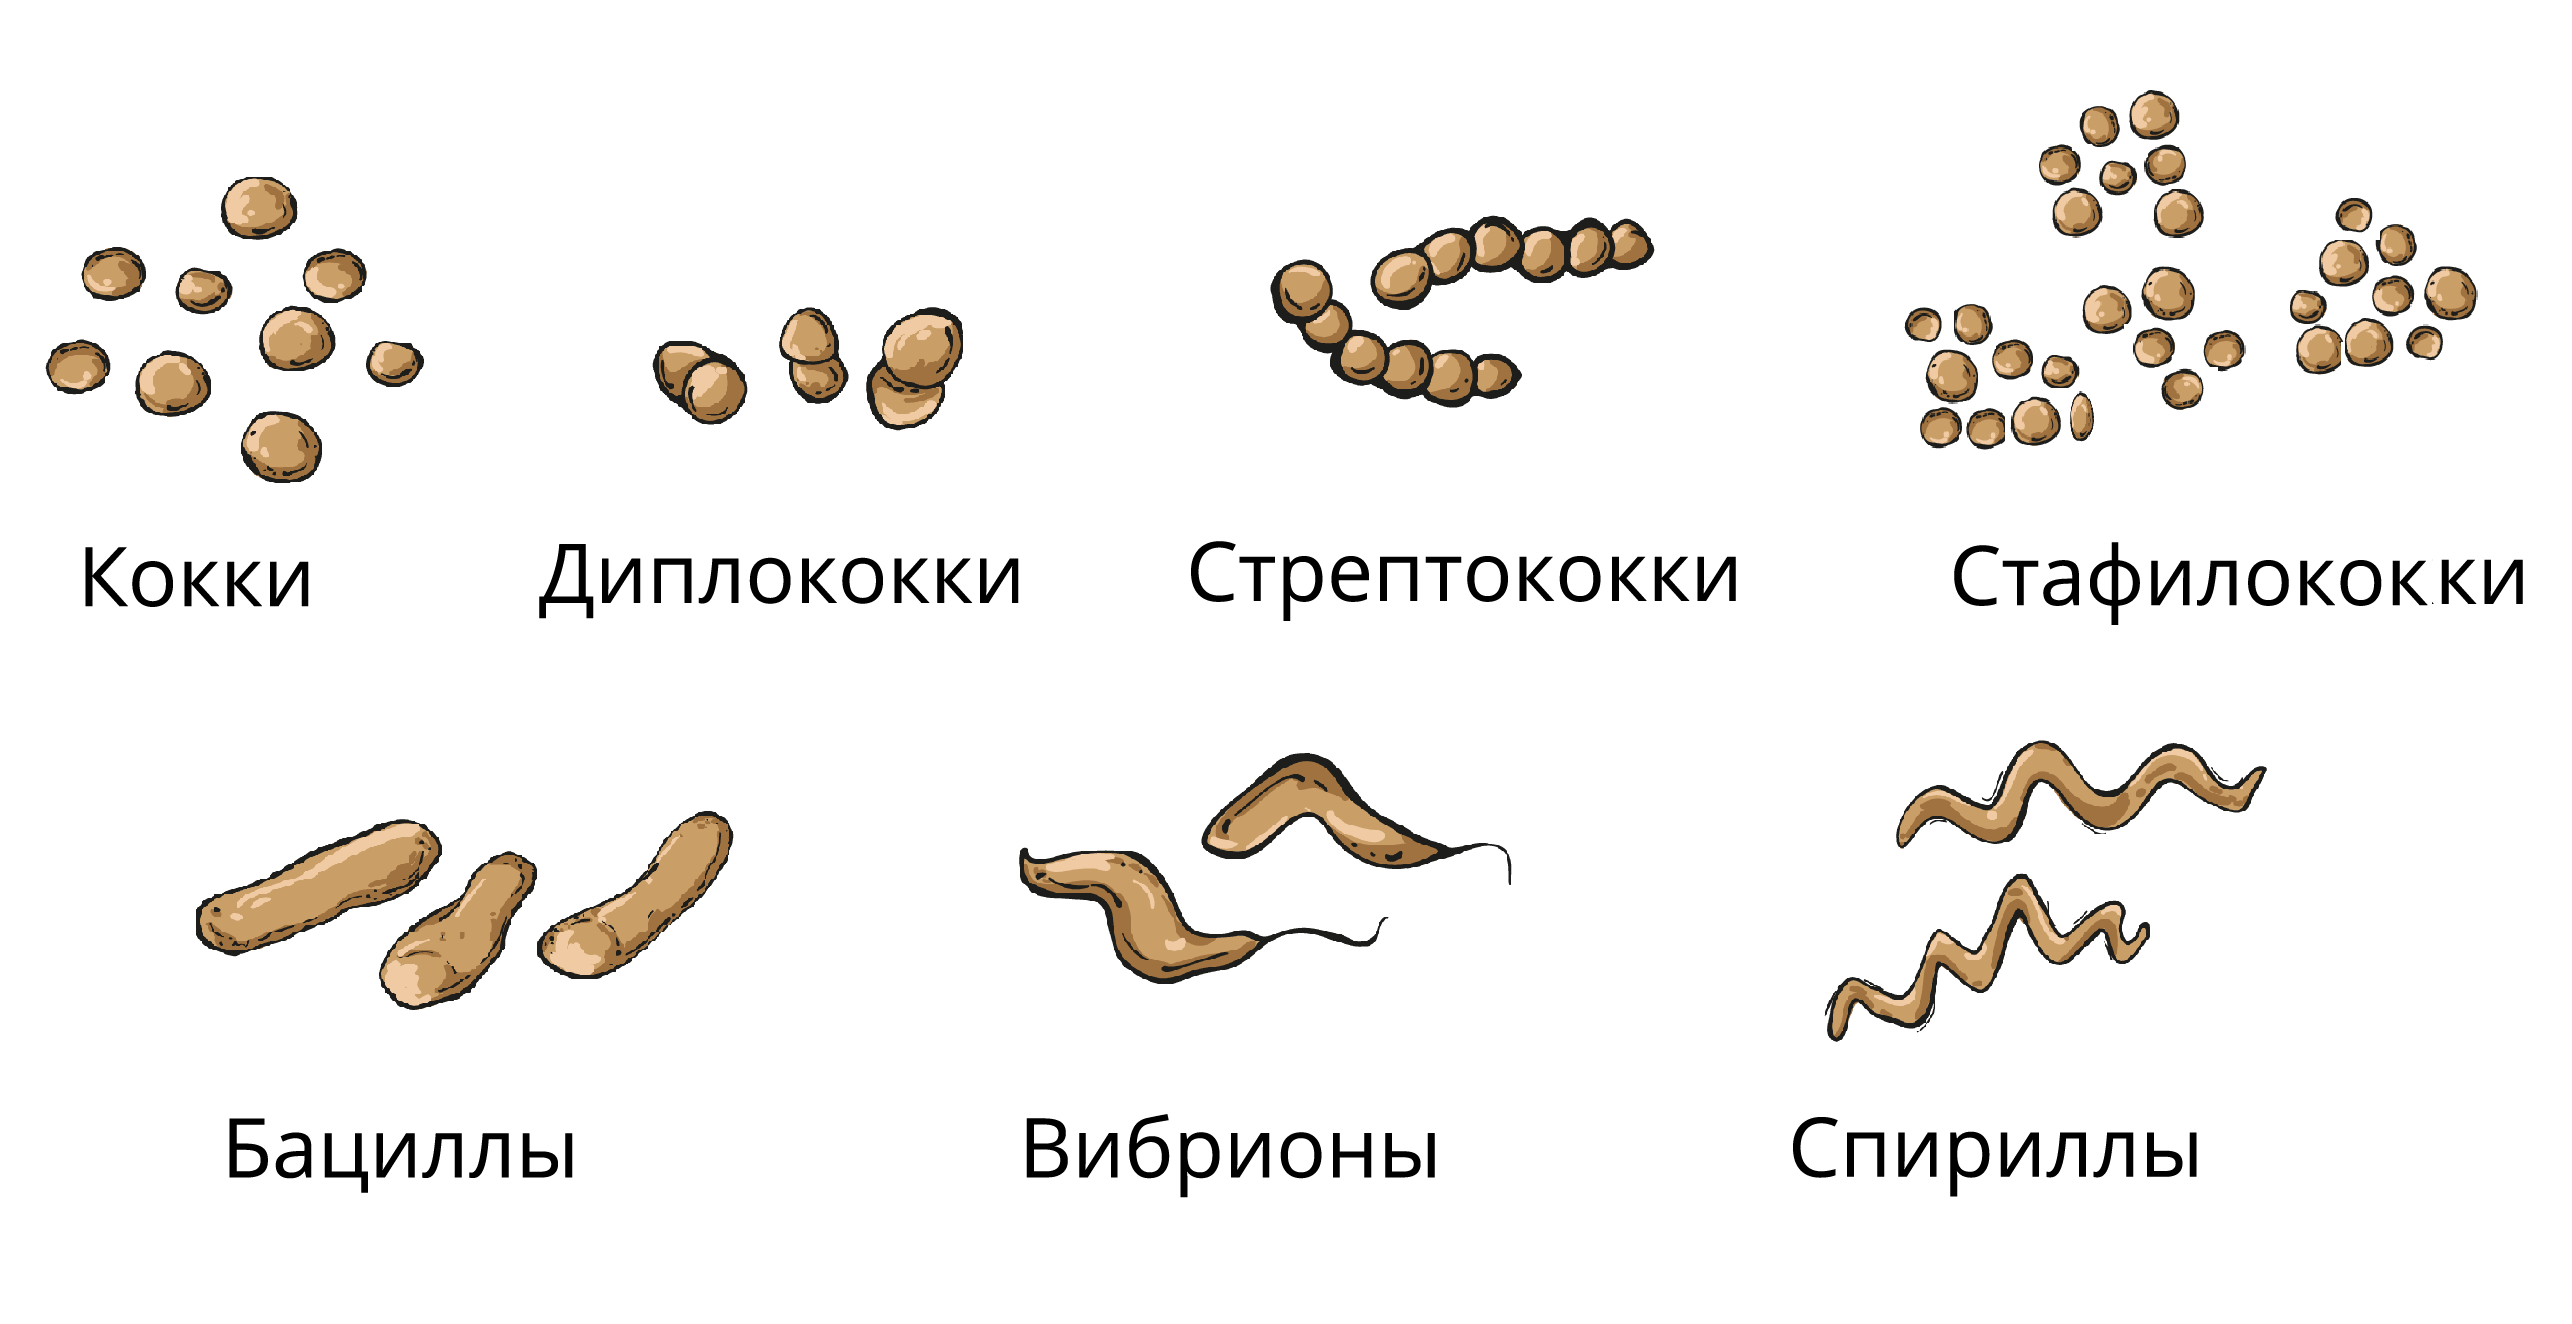 Бактерии изогнутой формы носят название. Кокки бациллы вибрионы спириллы. Кокки стрептококки бациллы. Кокки спириллы вибрионы палочки. Форма бактерий: кокки, бациллы, спириллы, вибрионы, стафилококки..